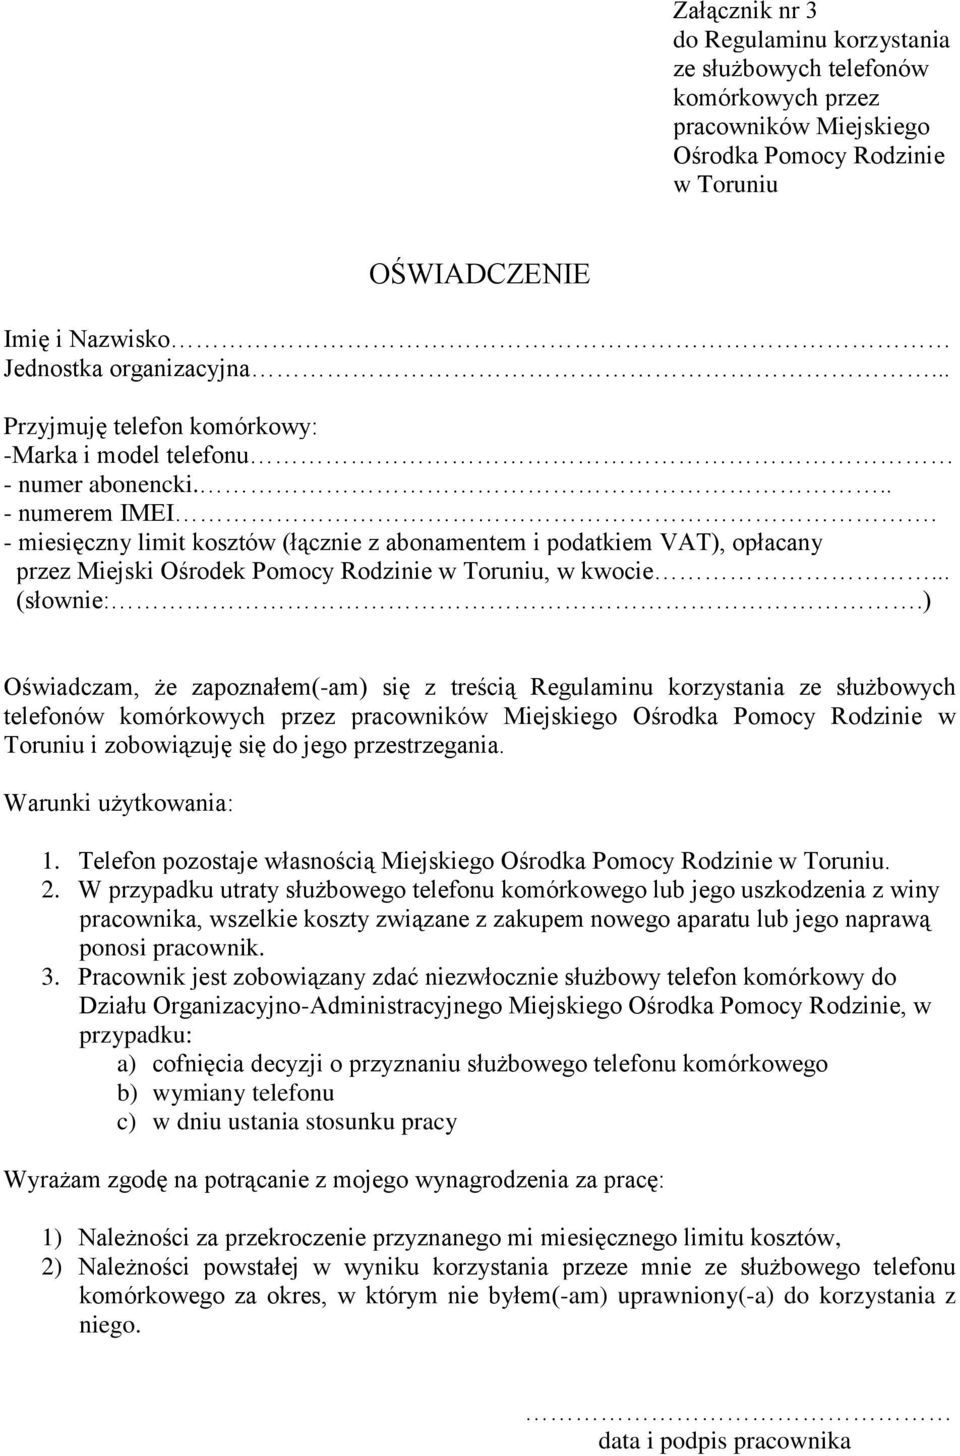 - miesięczny limit kosztów (łącznie z abonamentem i podatkiem VAT), opłacany przez Miejski Ośrodek Pomocy Rodzinie w Toruniu, w kwocie... (słownie:.